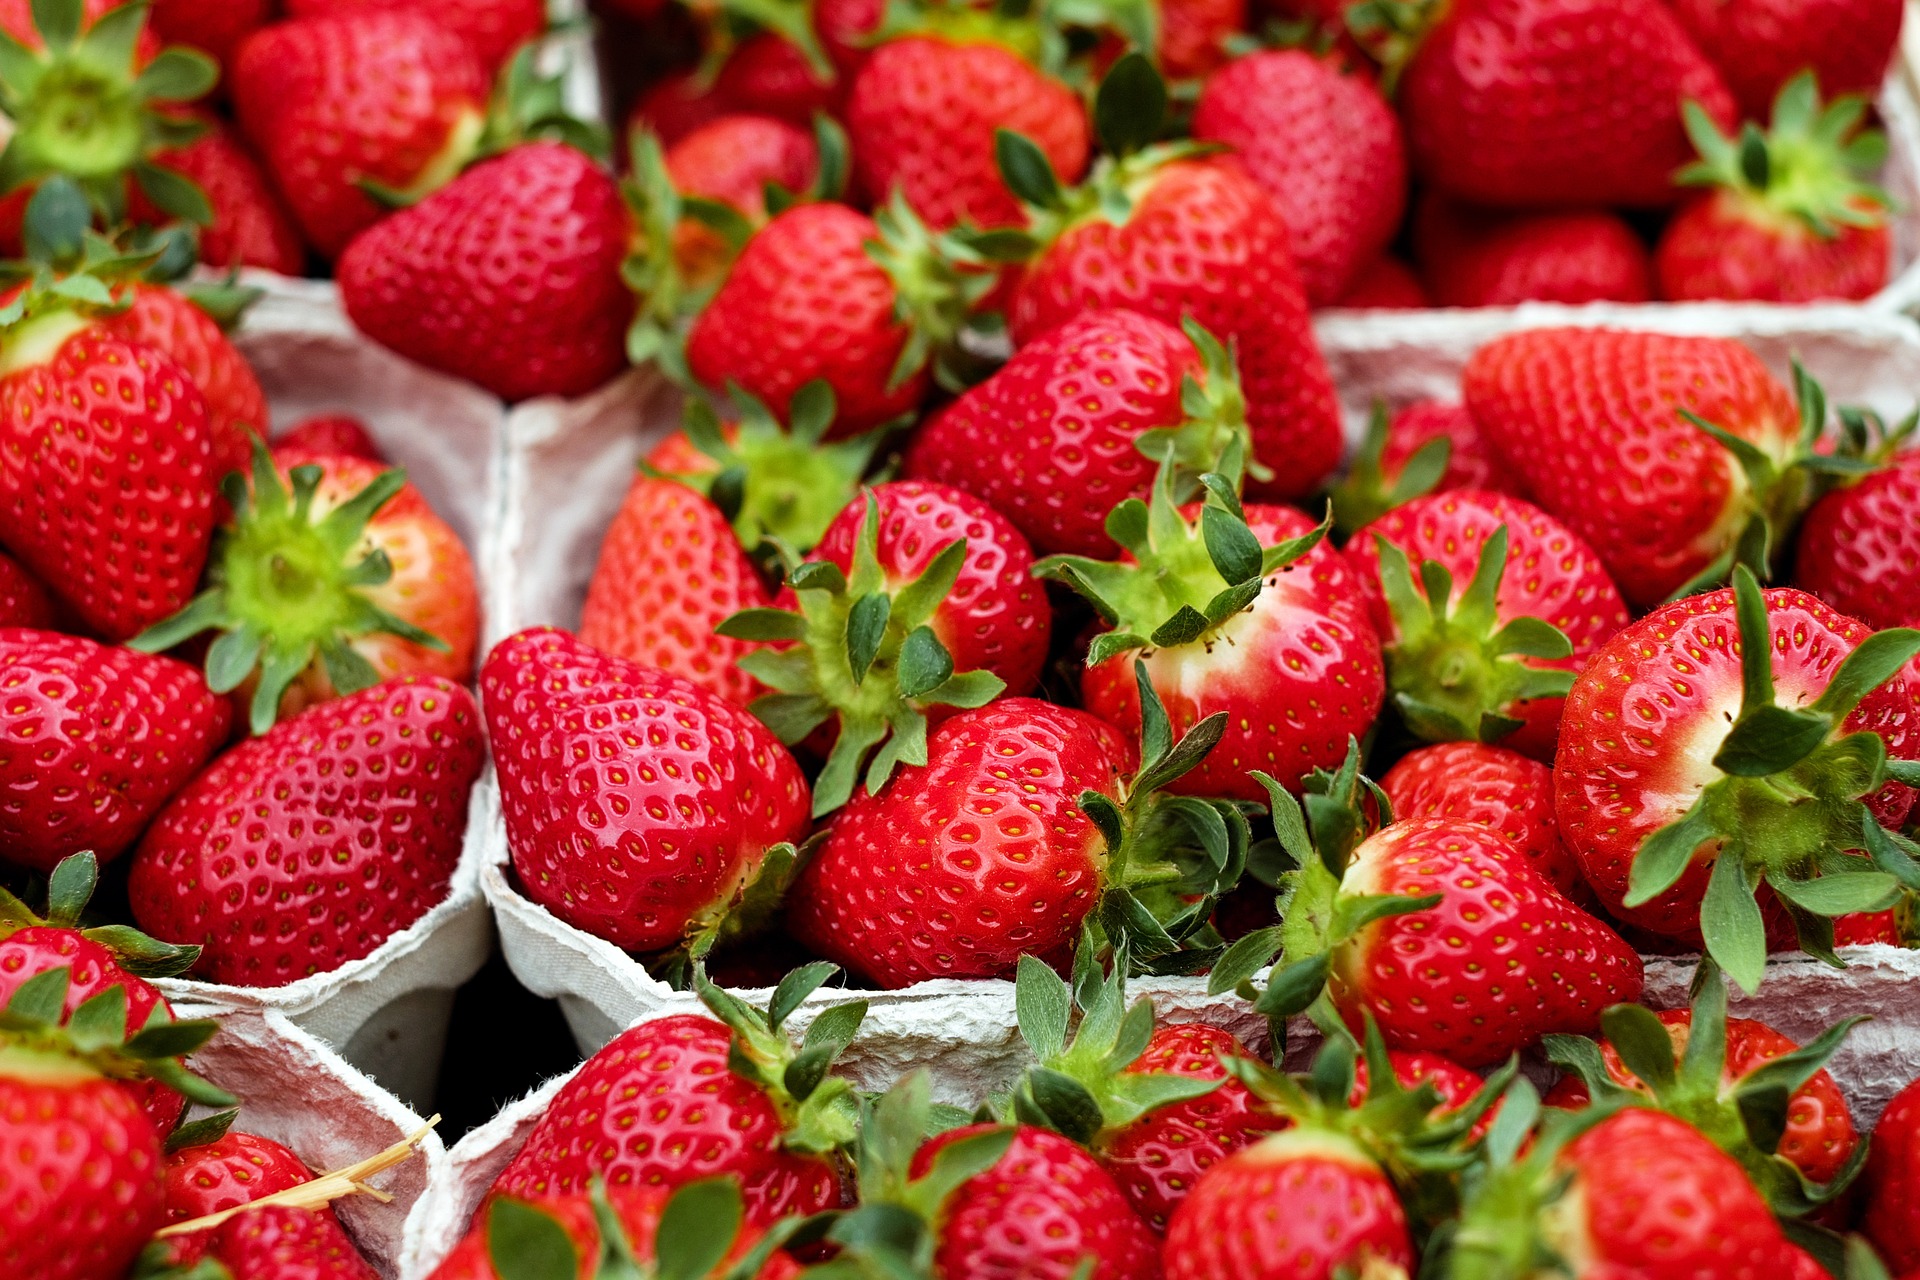 U Pick Strawberries at Smolak Farms in North Andover MA